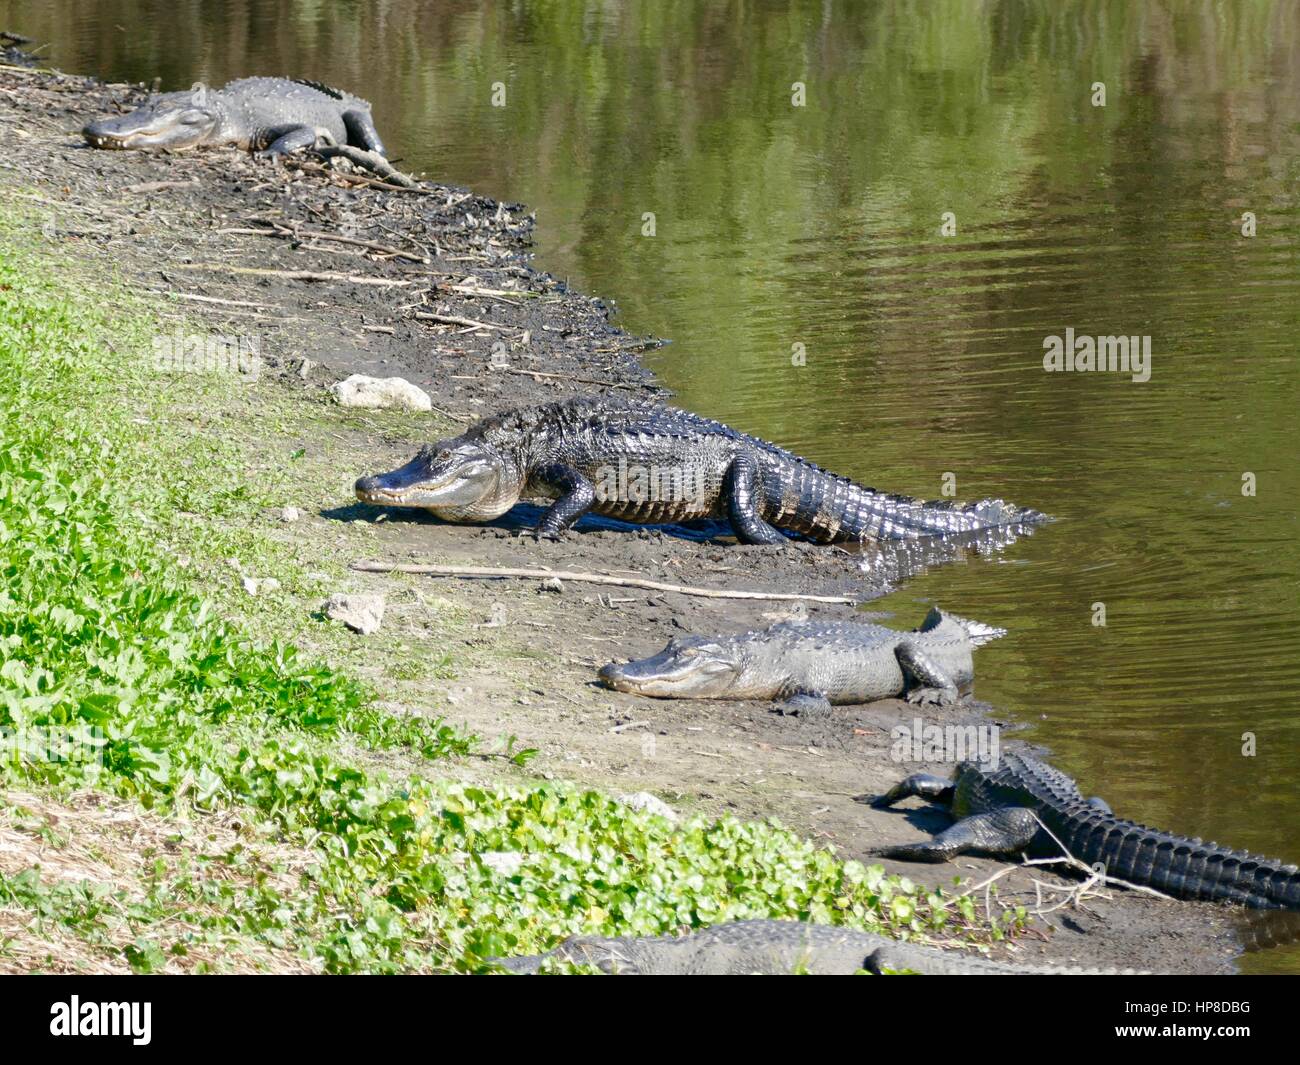 Les grands émergents Alligator dans l'eau, parc d'état de Paynes Prairie Preserve, Gainesville, Floride, USA Banque D'Images